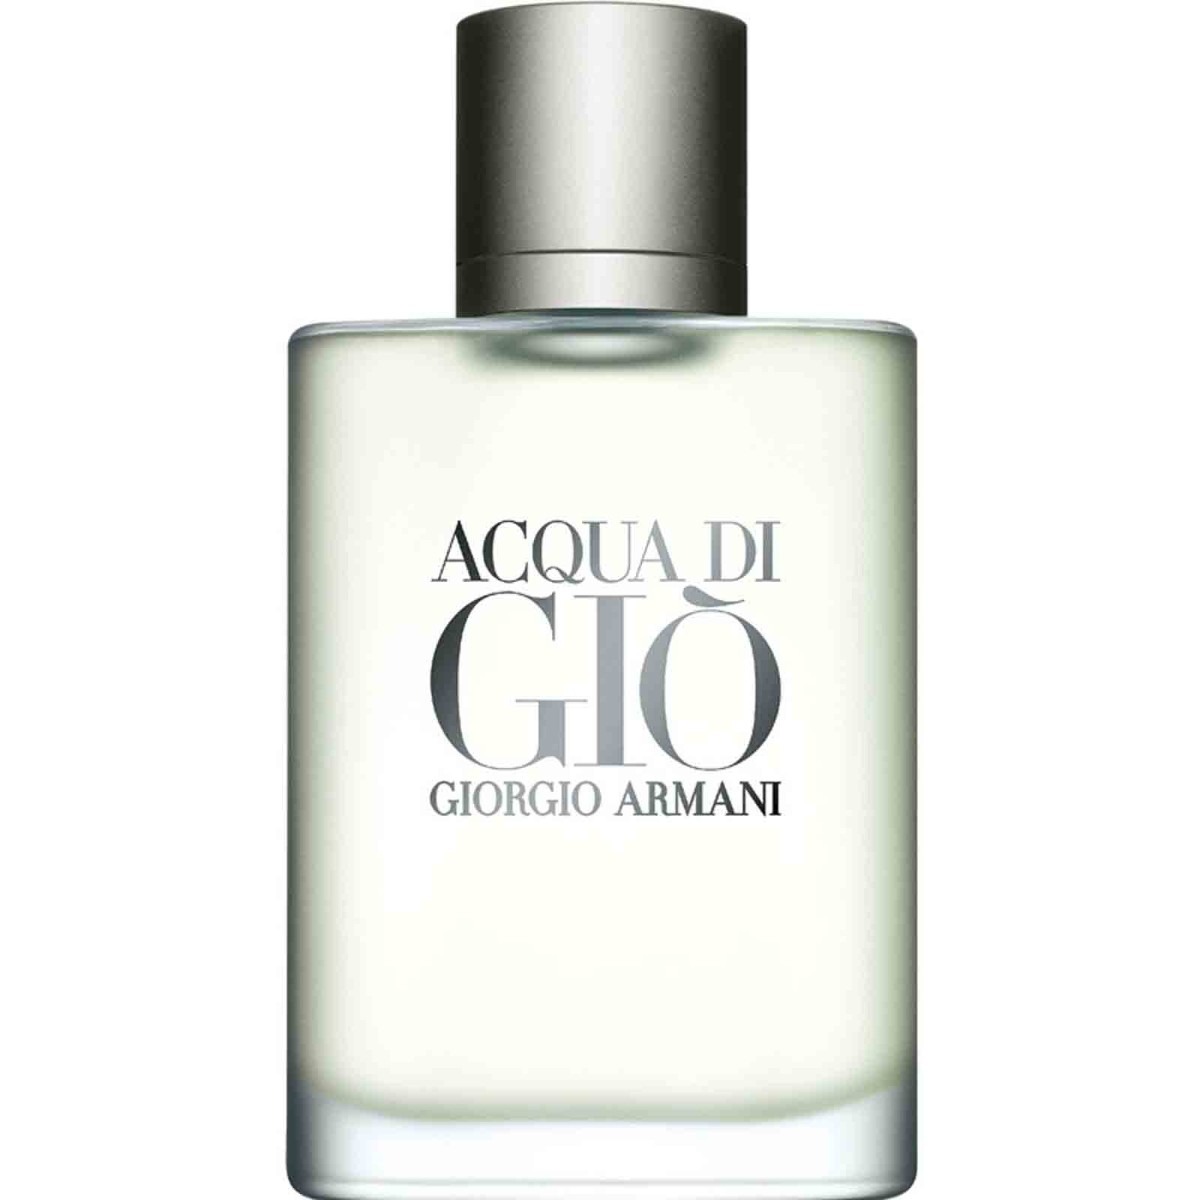 Perfume Acqua Di Gio 100ml Giorgio Armani Original E ...